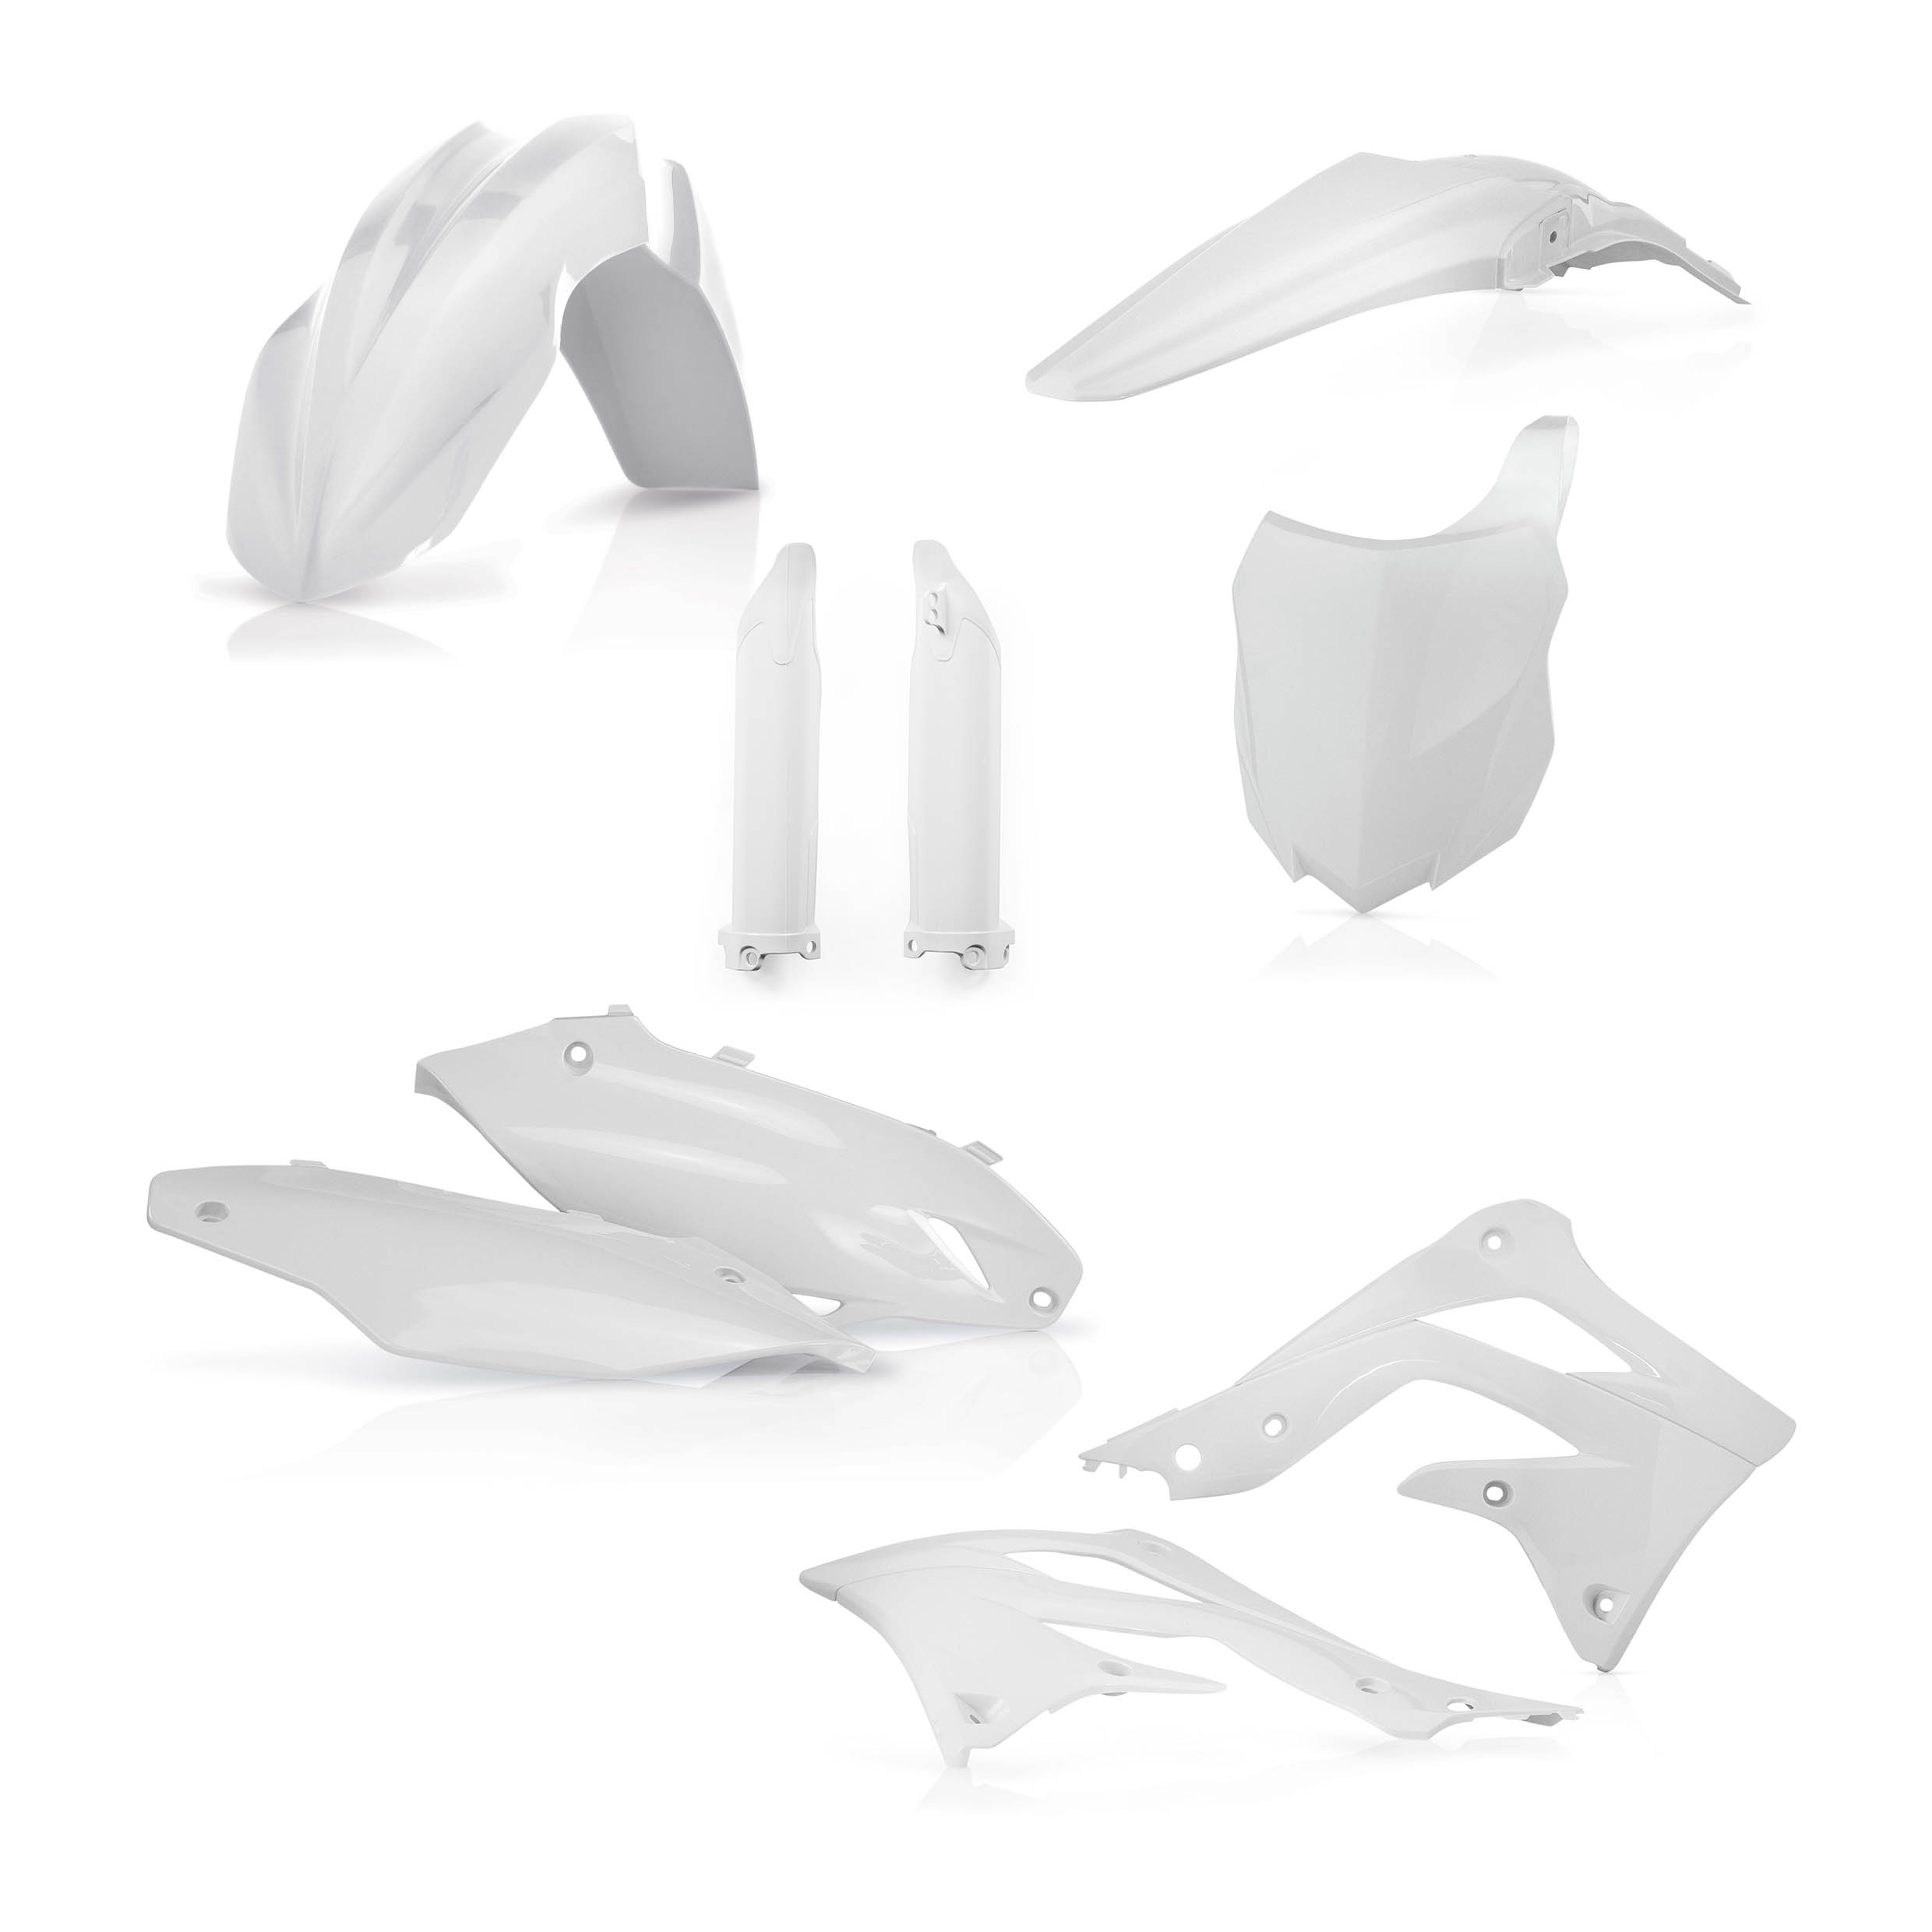 Plastikteile für deine Kawasaki KX 450 in weiß bestehend aus Kotflügel vorn Kotflügel hinten Kühlerspoiler Seitenteile Gabelschützer Startnummerntafel